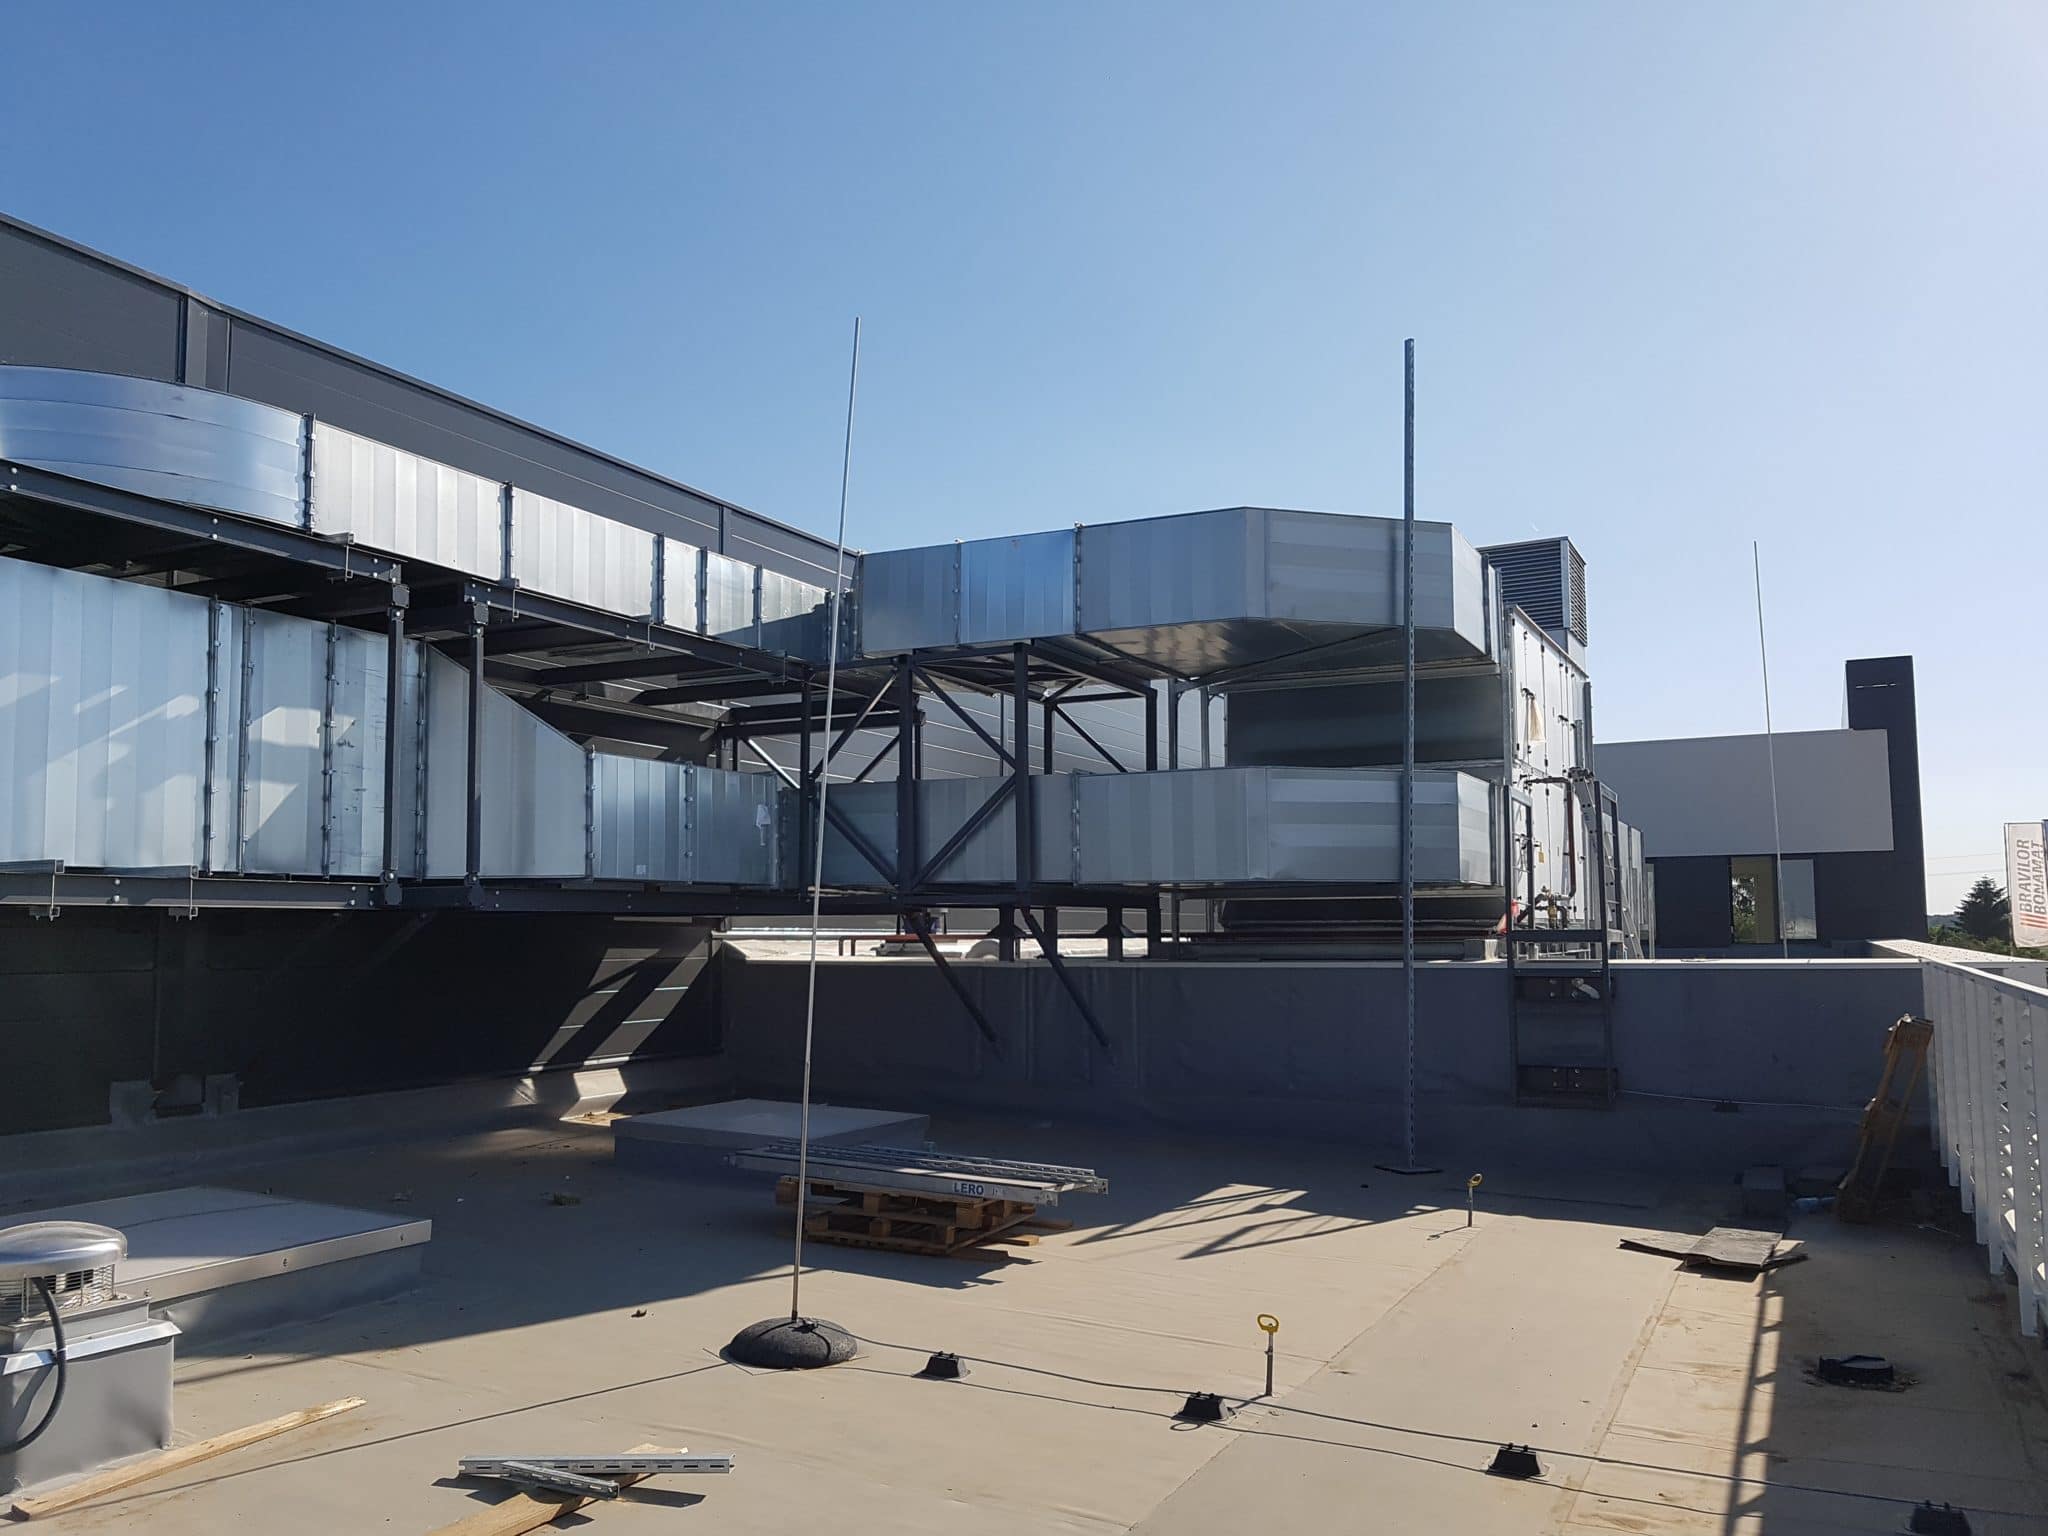 Dach - widok na instalację wentylacyjną fabryki